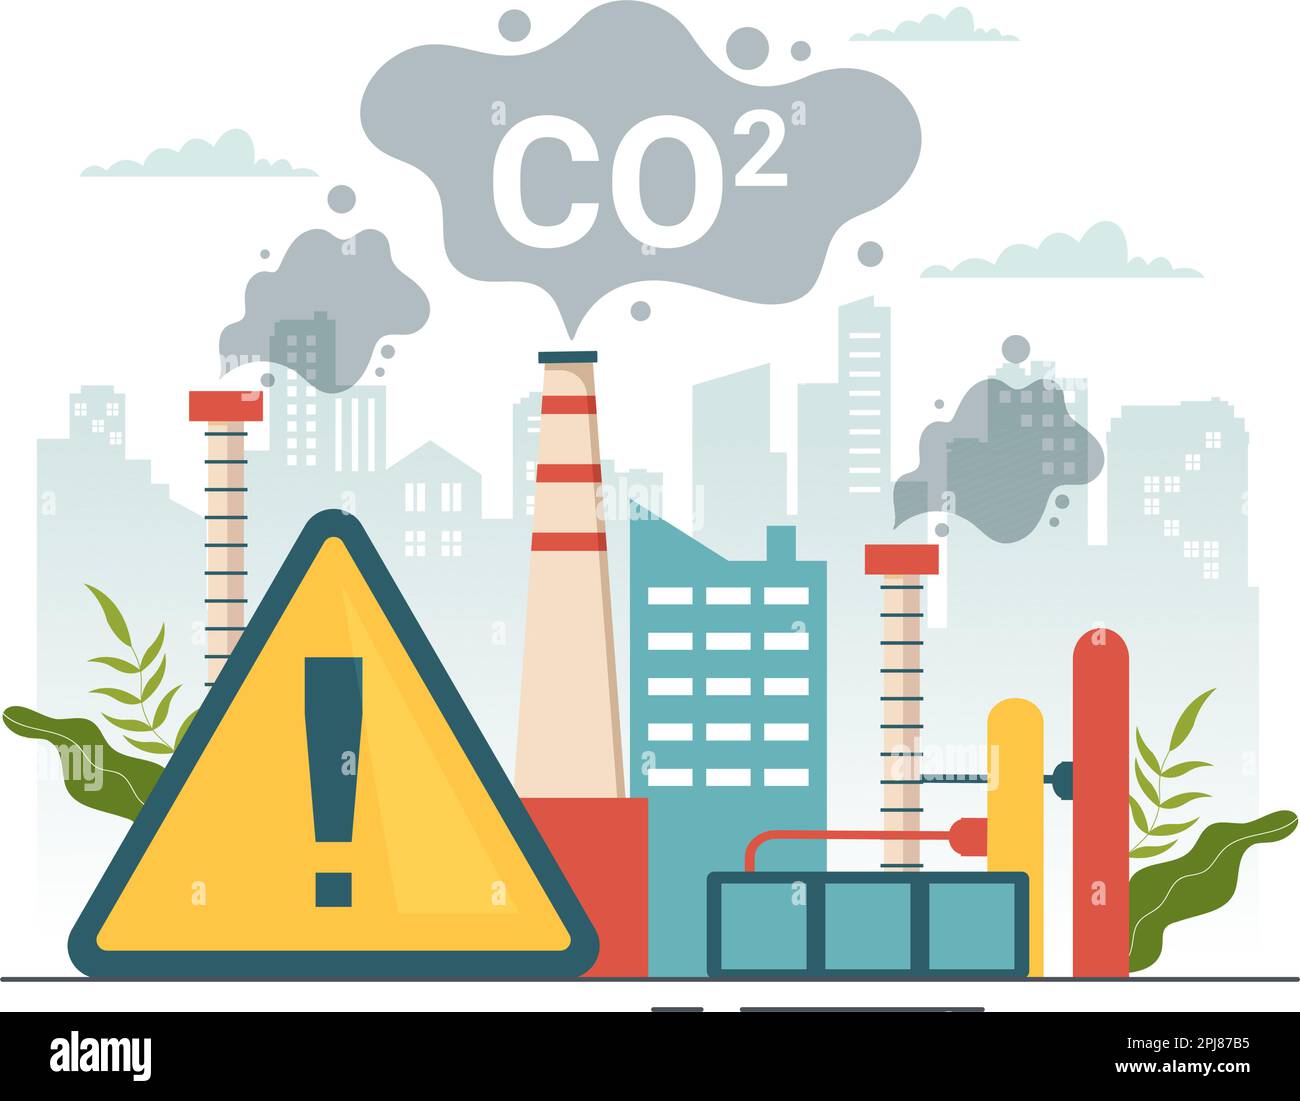 Dioxyde de carbone ou illustration de CO2 pour sauver la planète Terre du changement climatique en raison de la pollution des usines et des véhicules dans des modèles dessinés à la main Illustration de Vecteur